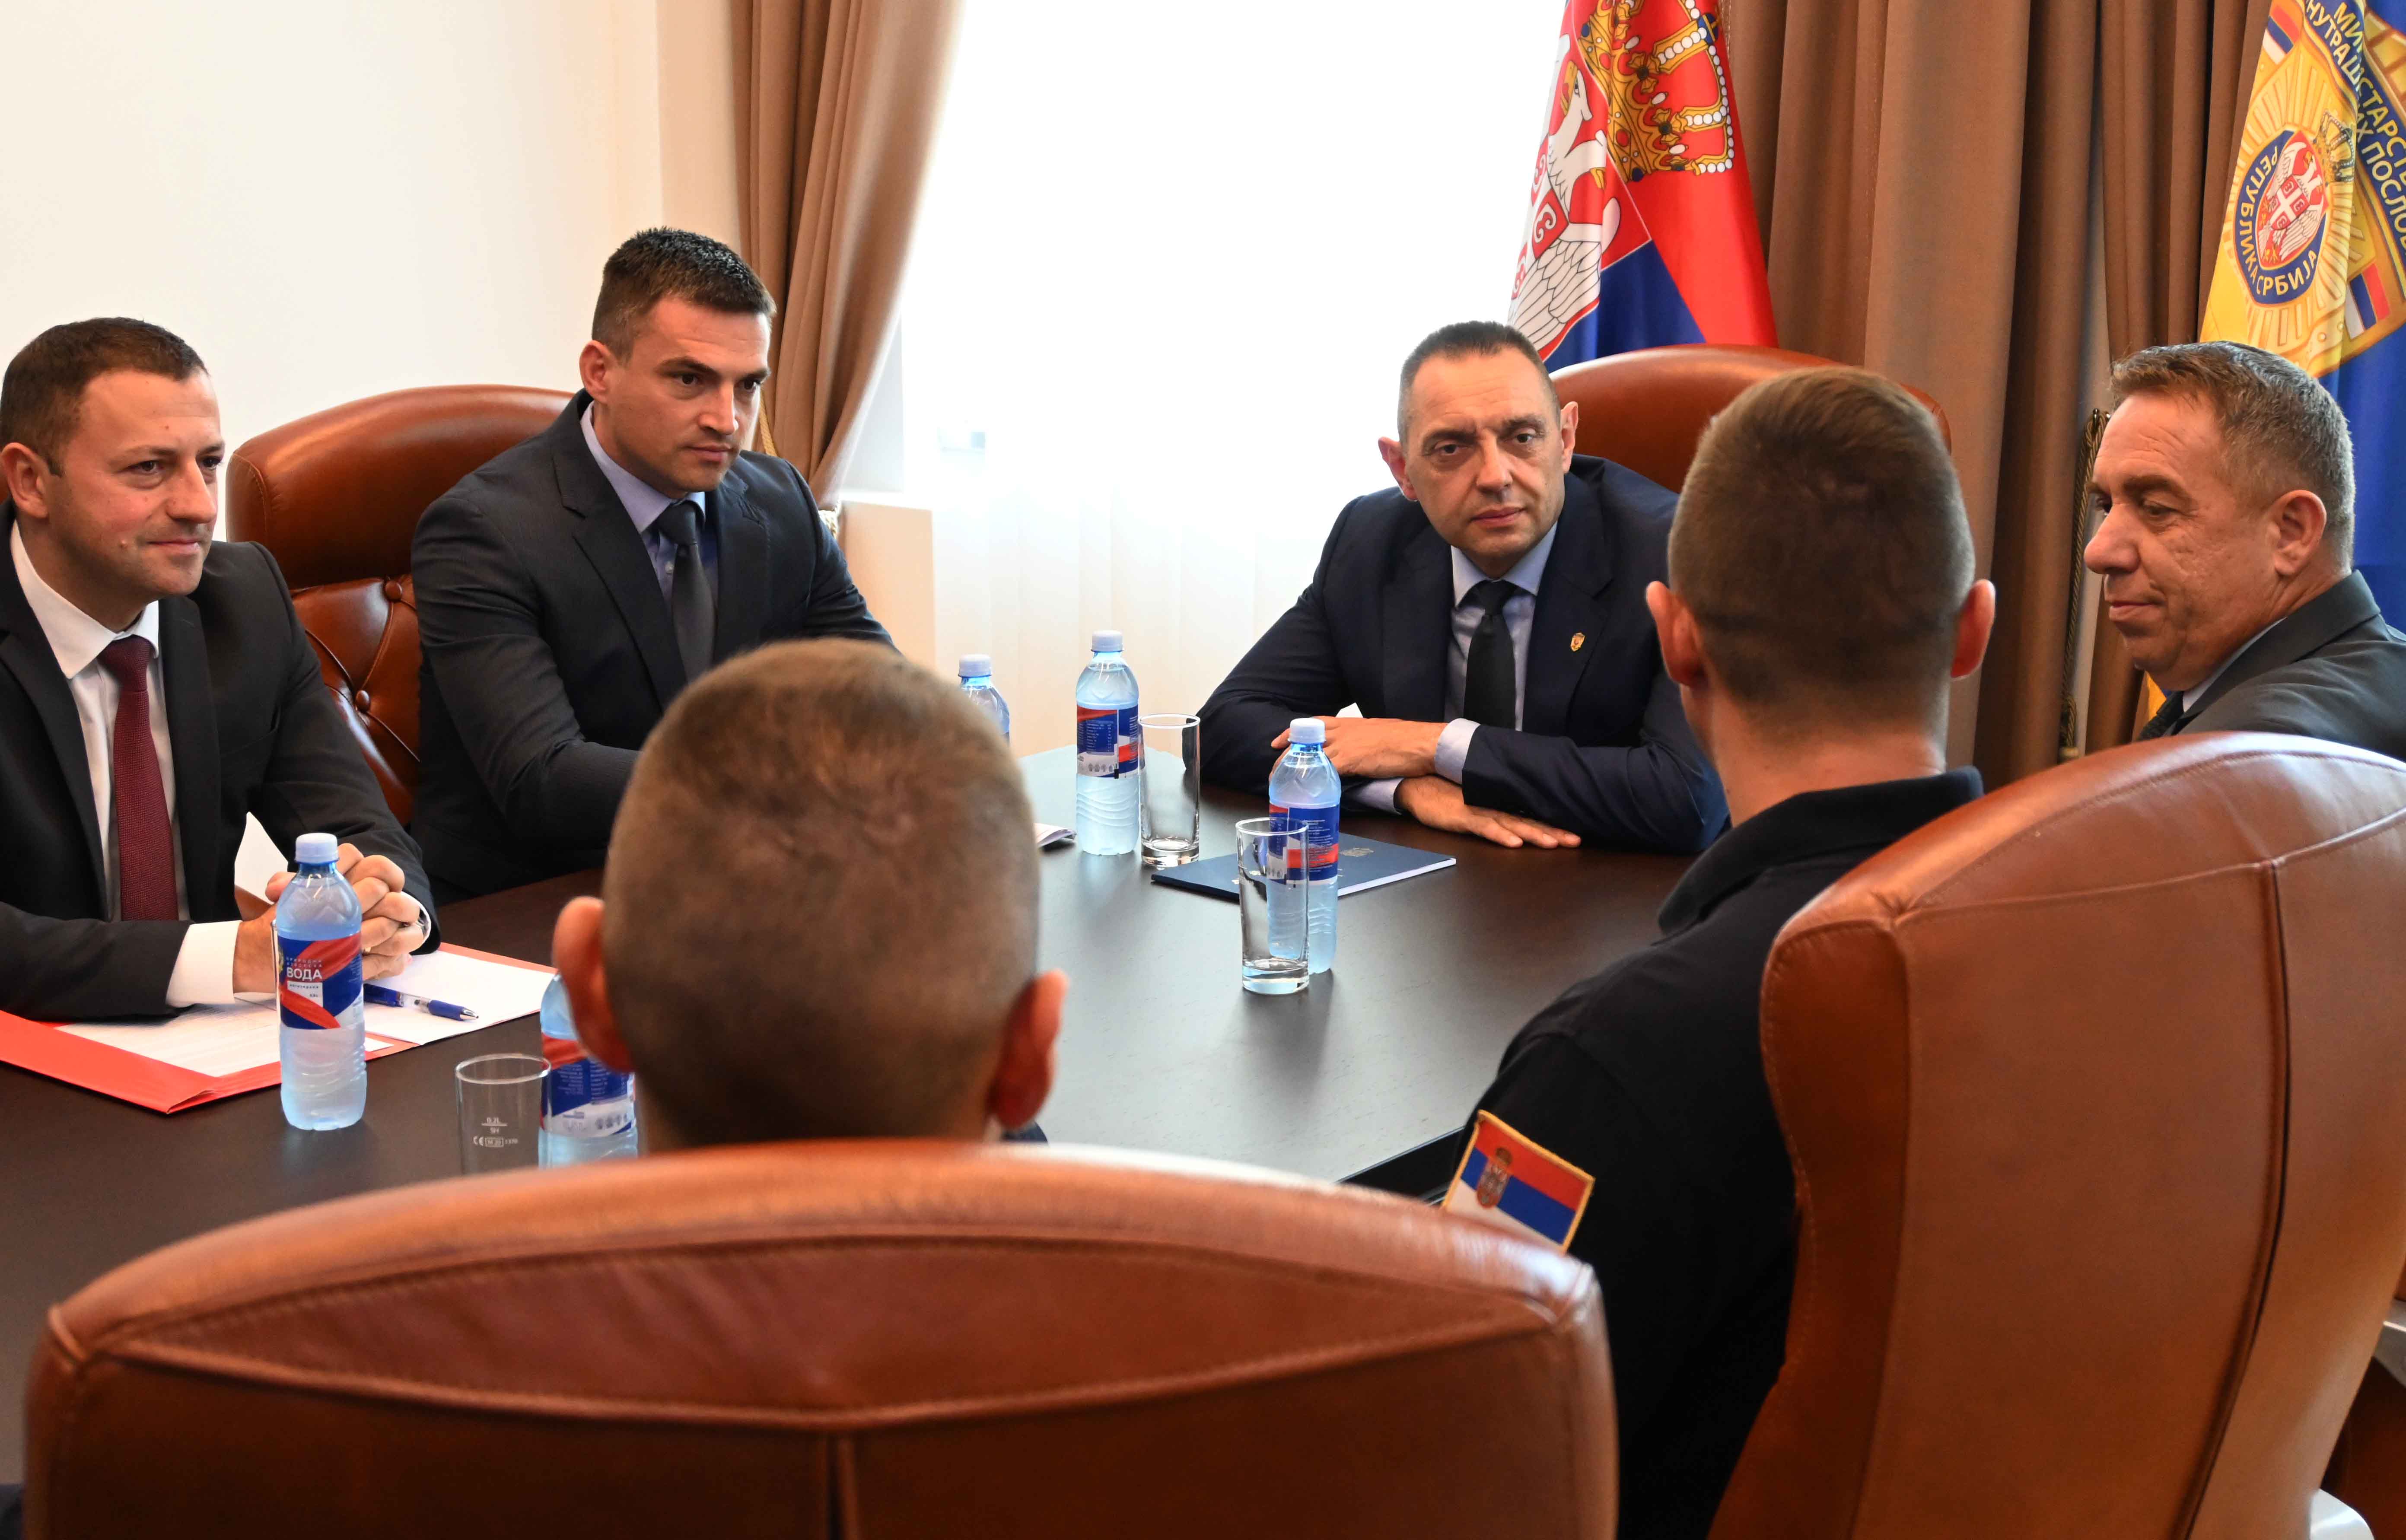 Министар Александар Вулин похвалио је припаднике Ватрогасно-спасилачке чете у Зајечару, поручивши им да су они истински хероји